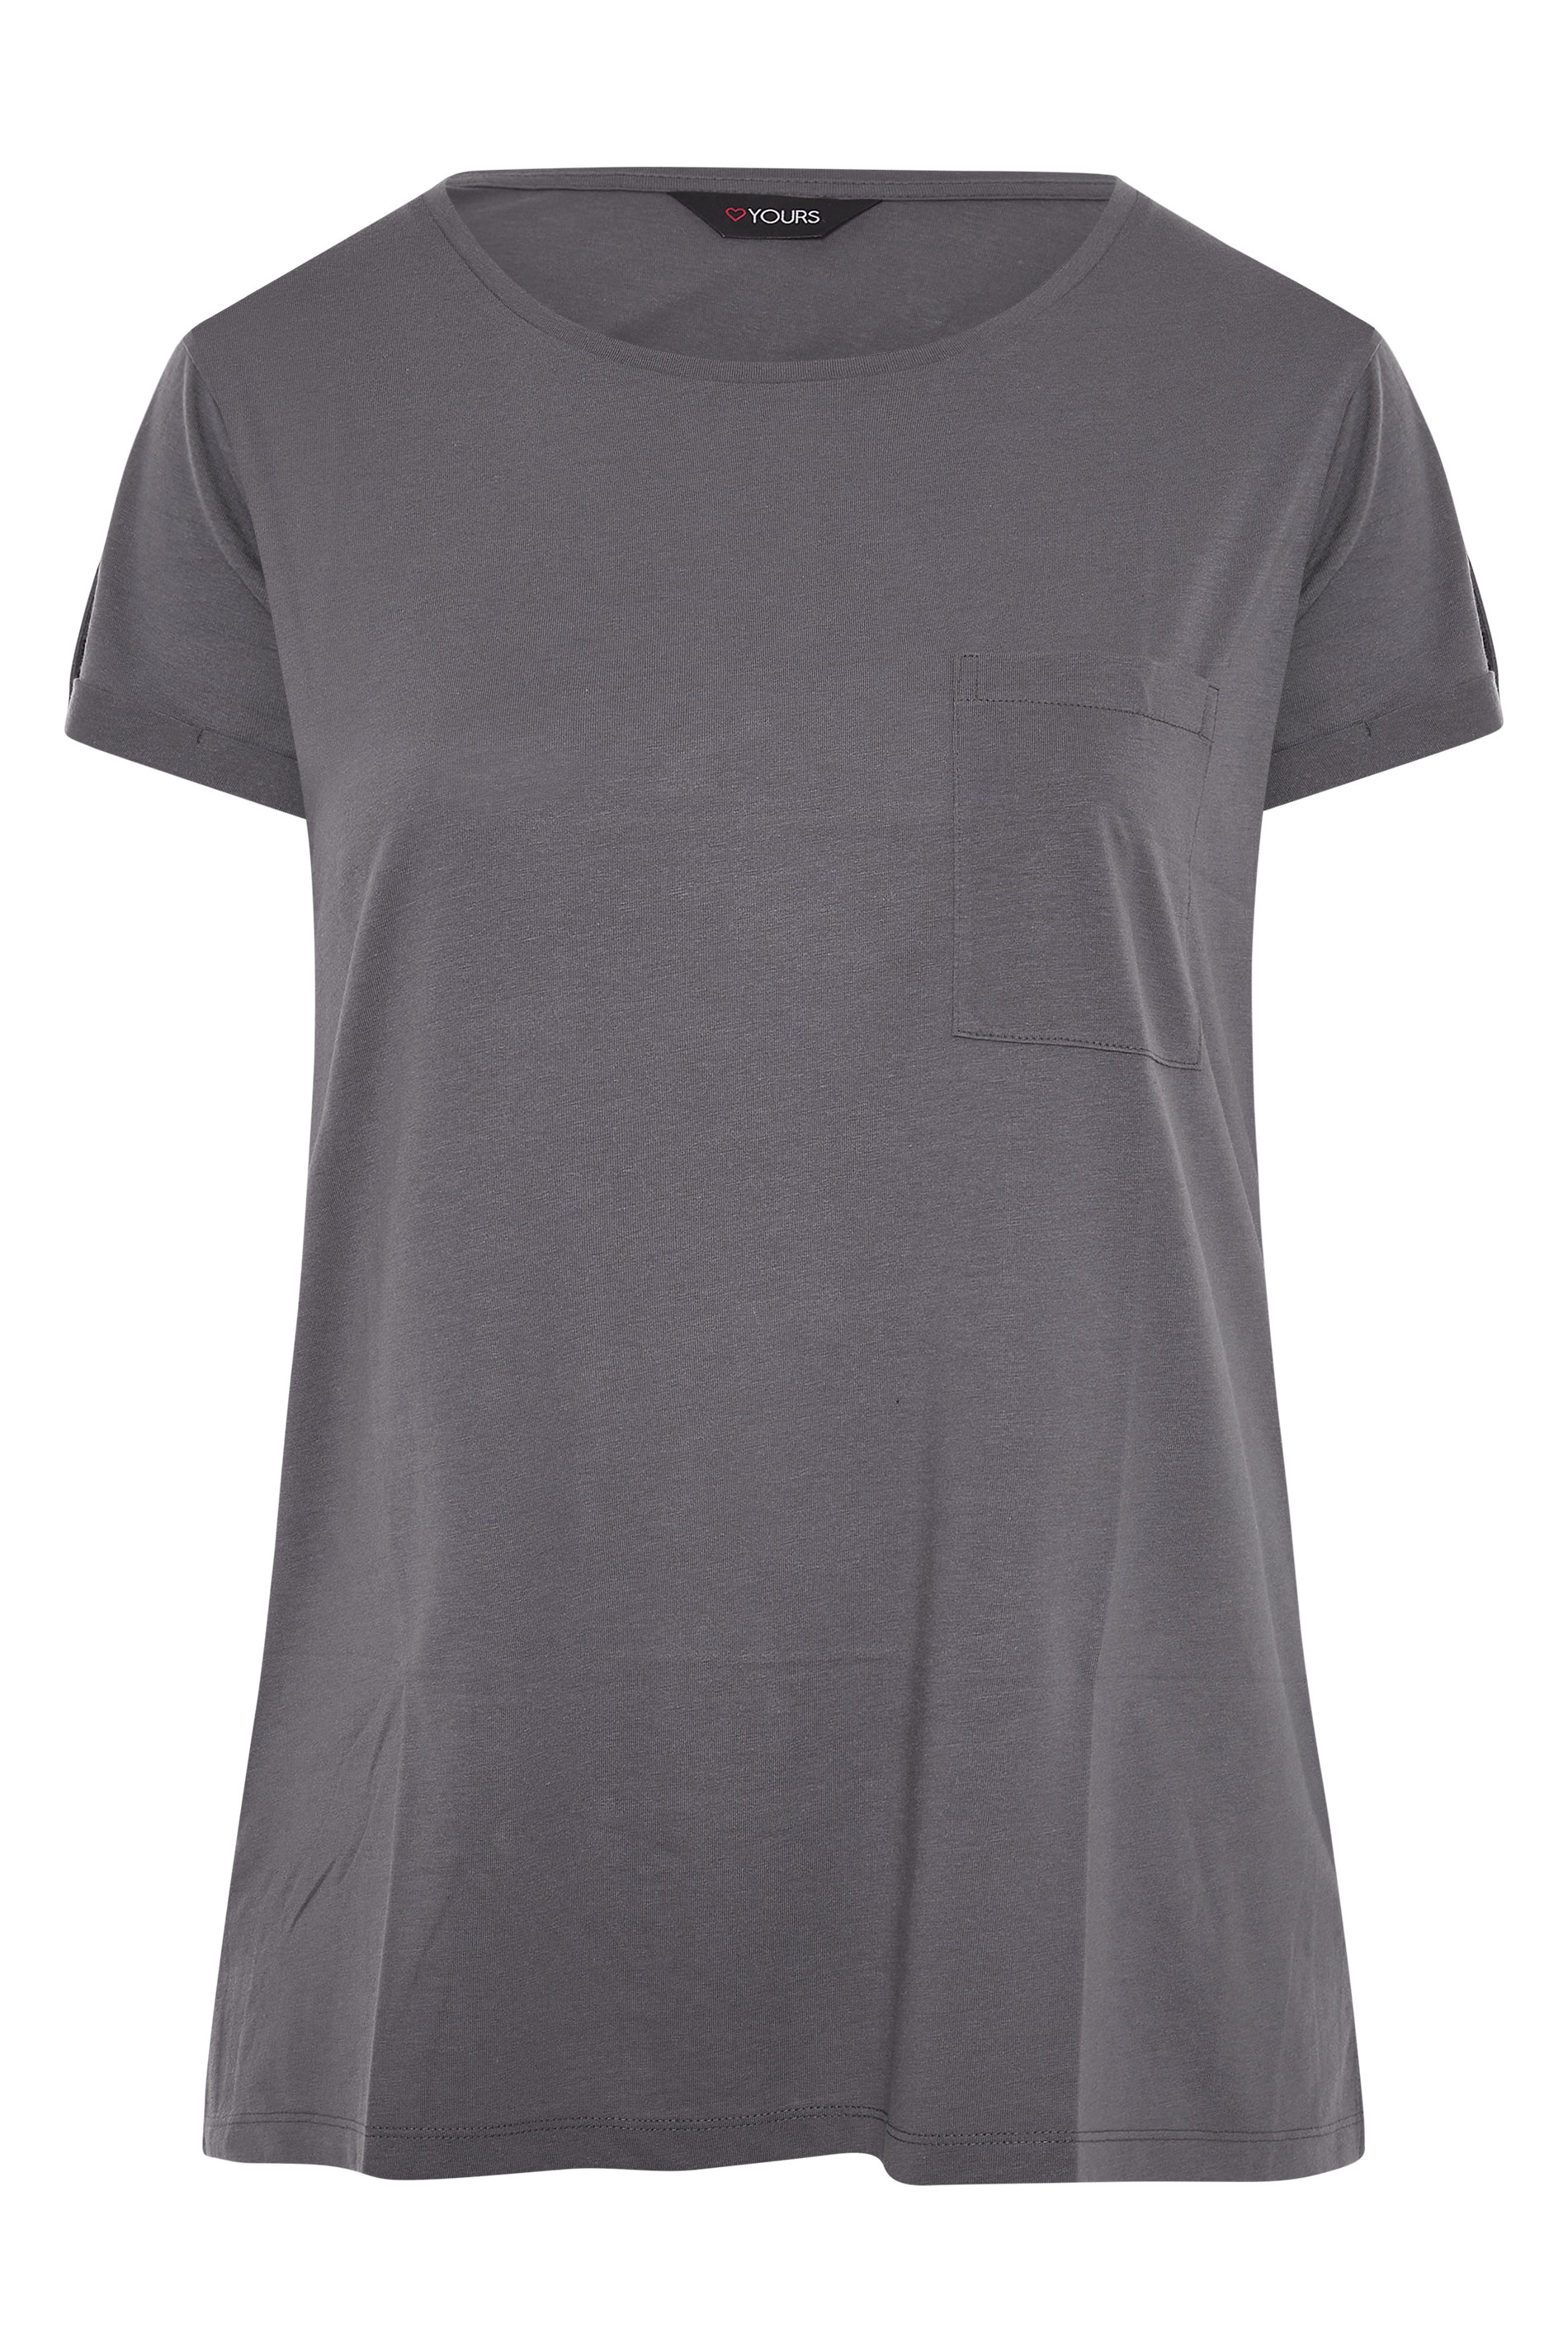 Grande taille  Tops Grande taille  T-Shirts | T-Shirt Gris Charbonneux Ourlet Plongeant à Poche - IY08052